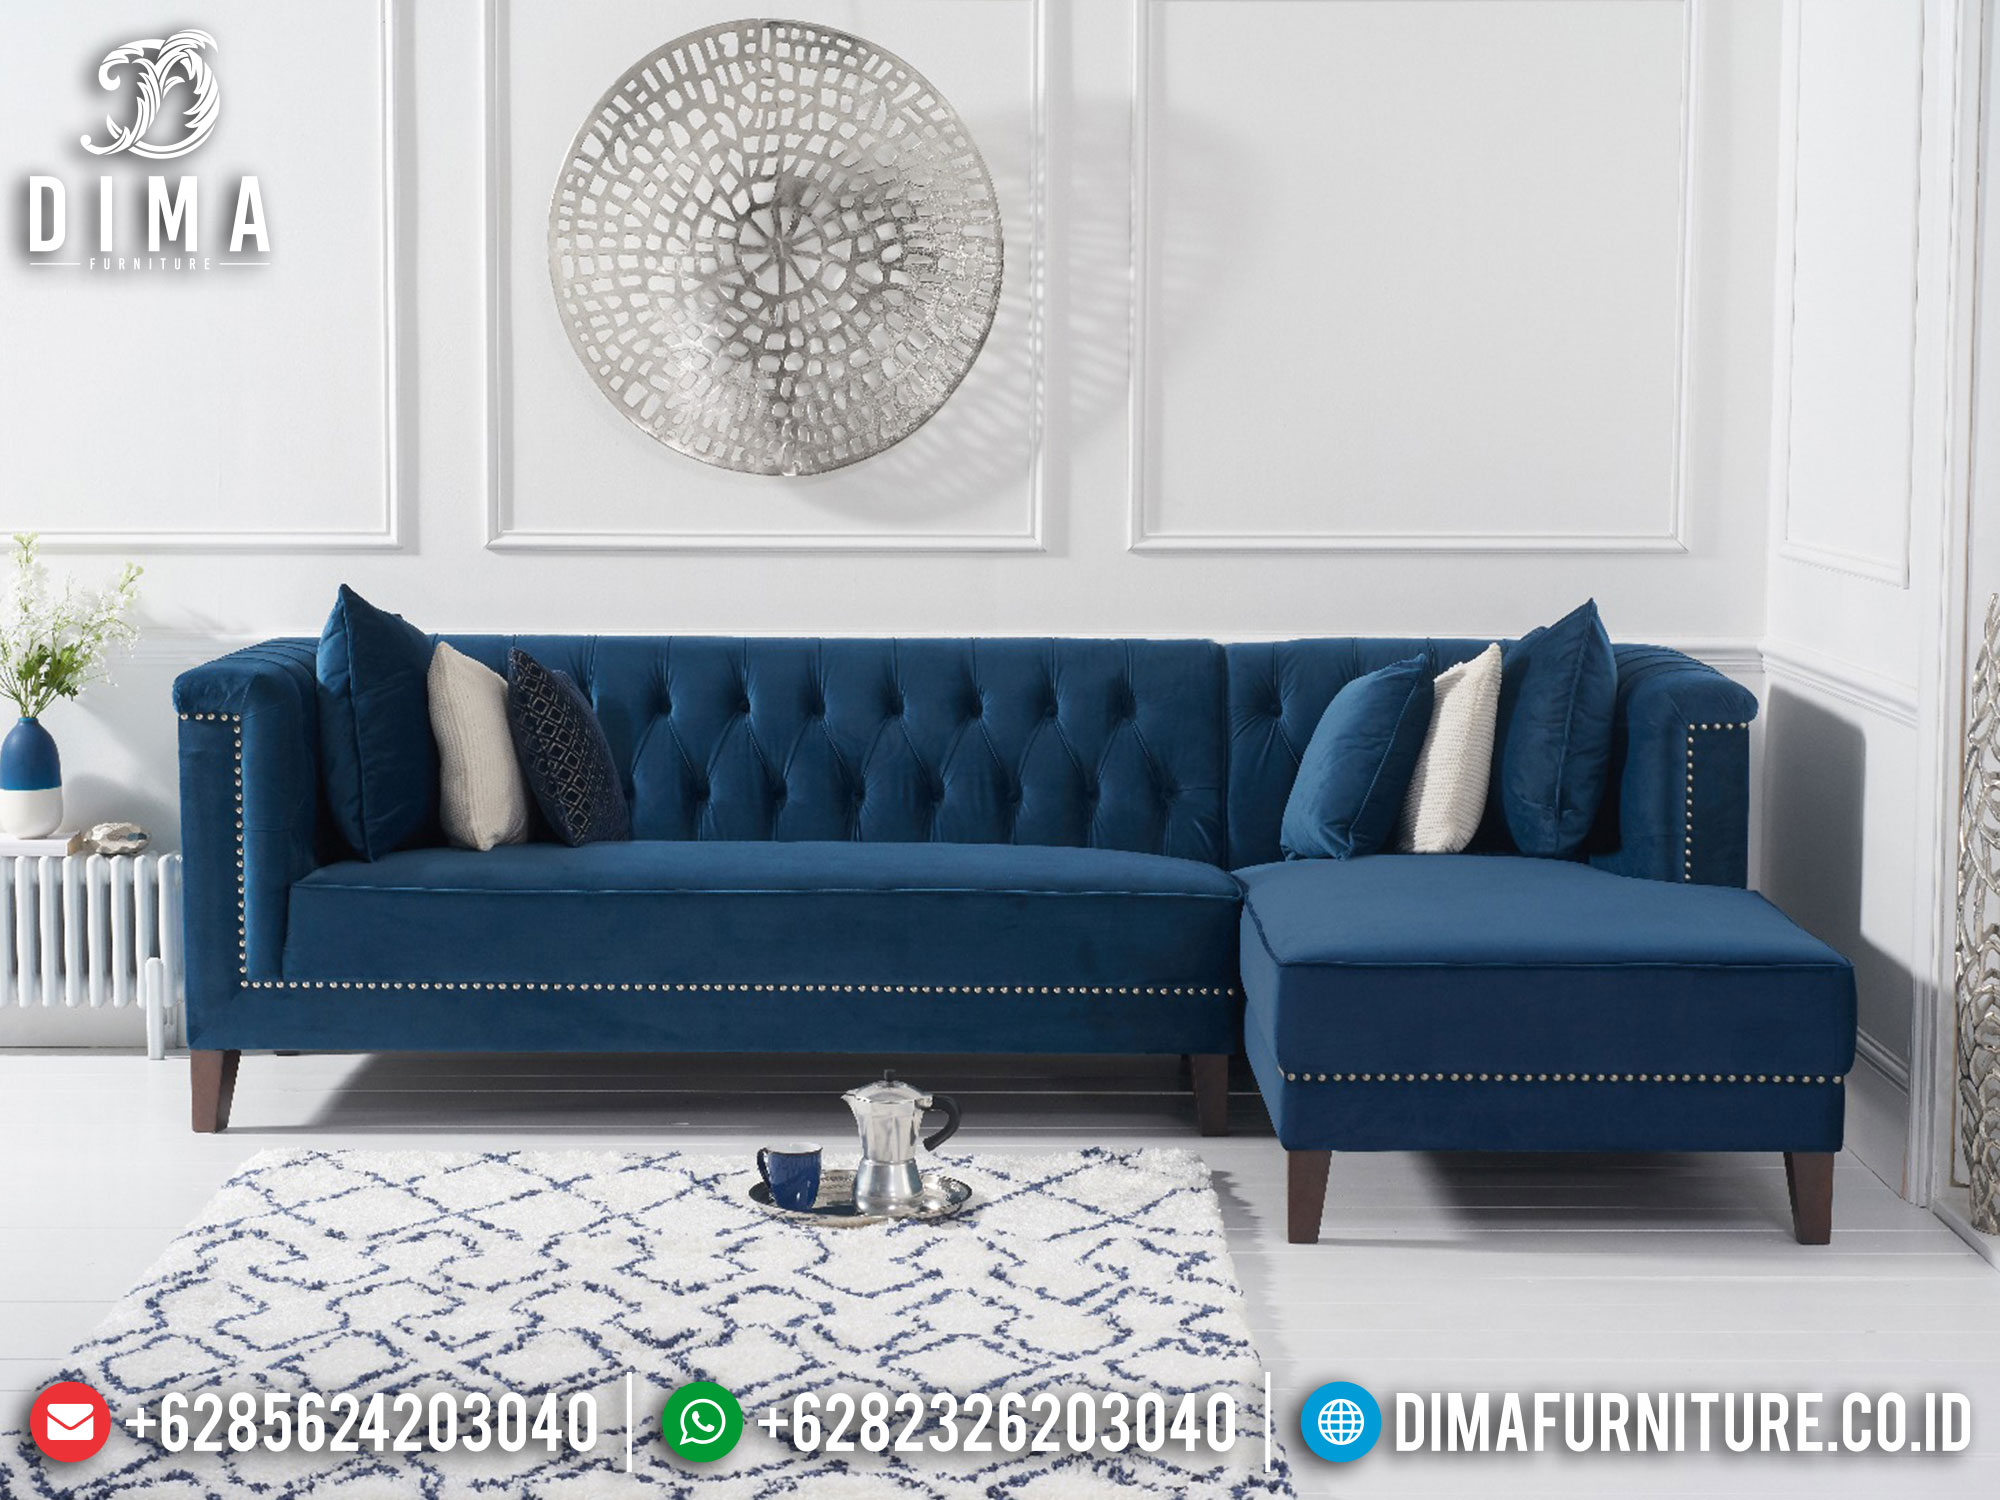 Sofa Tamu Minimalis Chester Furniture Jepara Terbaru Great Quality Product ST-1267